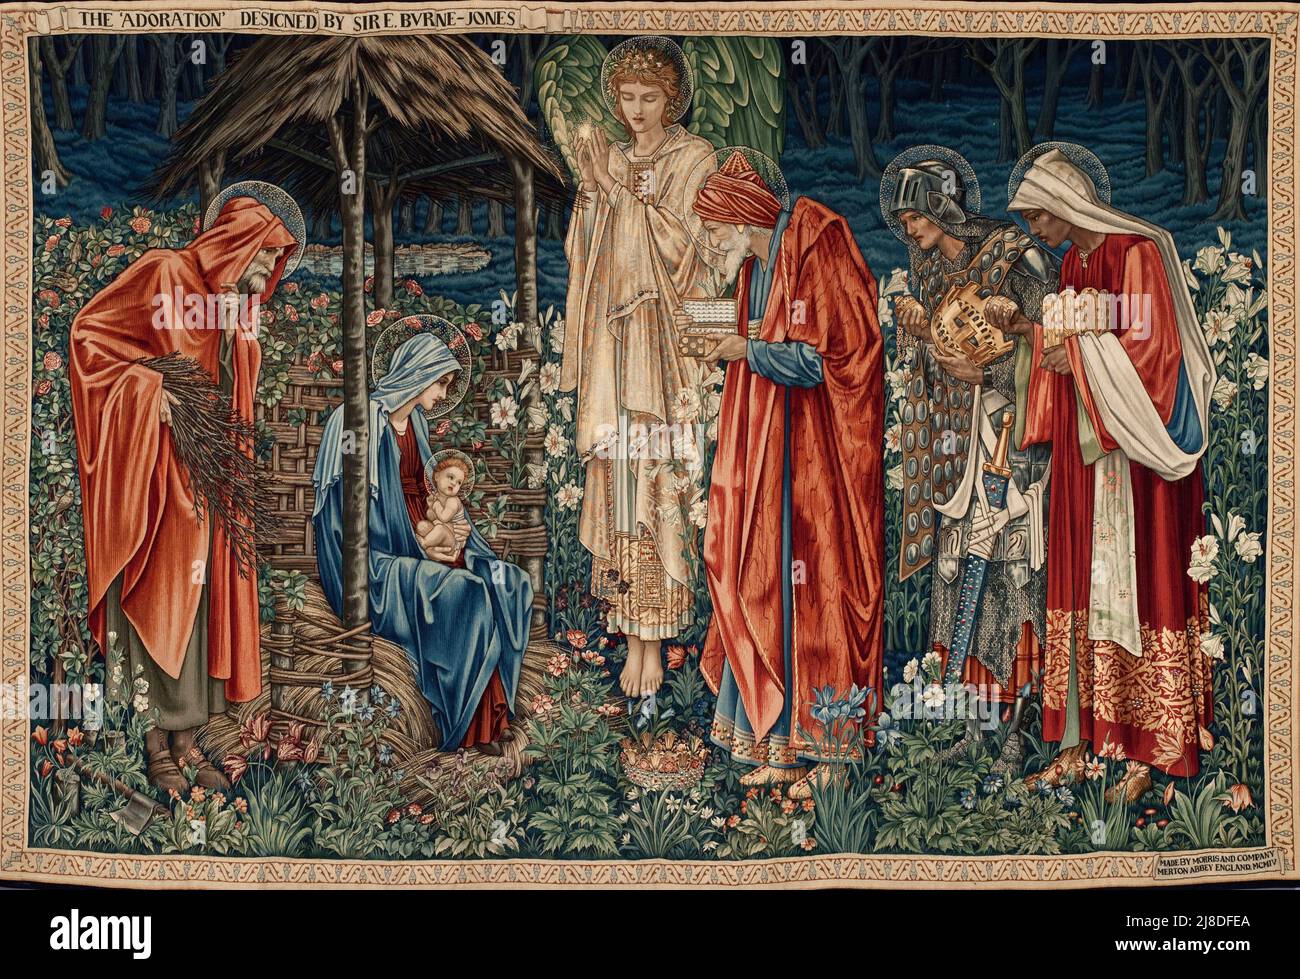 L'adoration du Magi par Edward Burne Jones. Dans ce mythe chrétien, trois sages hommes ou rois viennent visiter le nouveau-né jésus et le reconnaissent comme le messie et fils de dieu. Banque D'Images